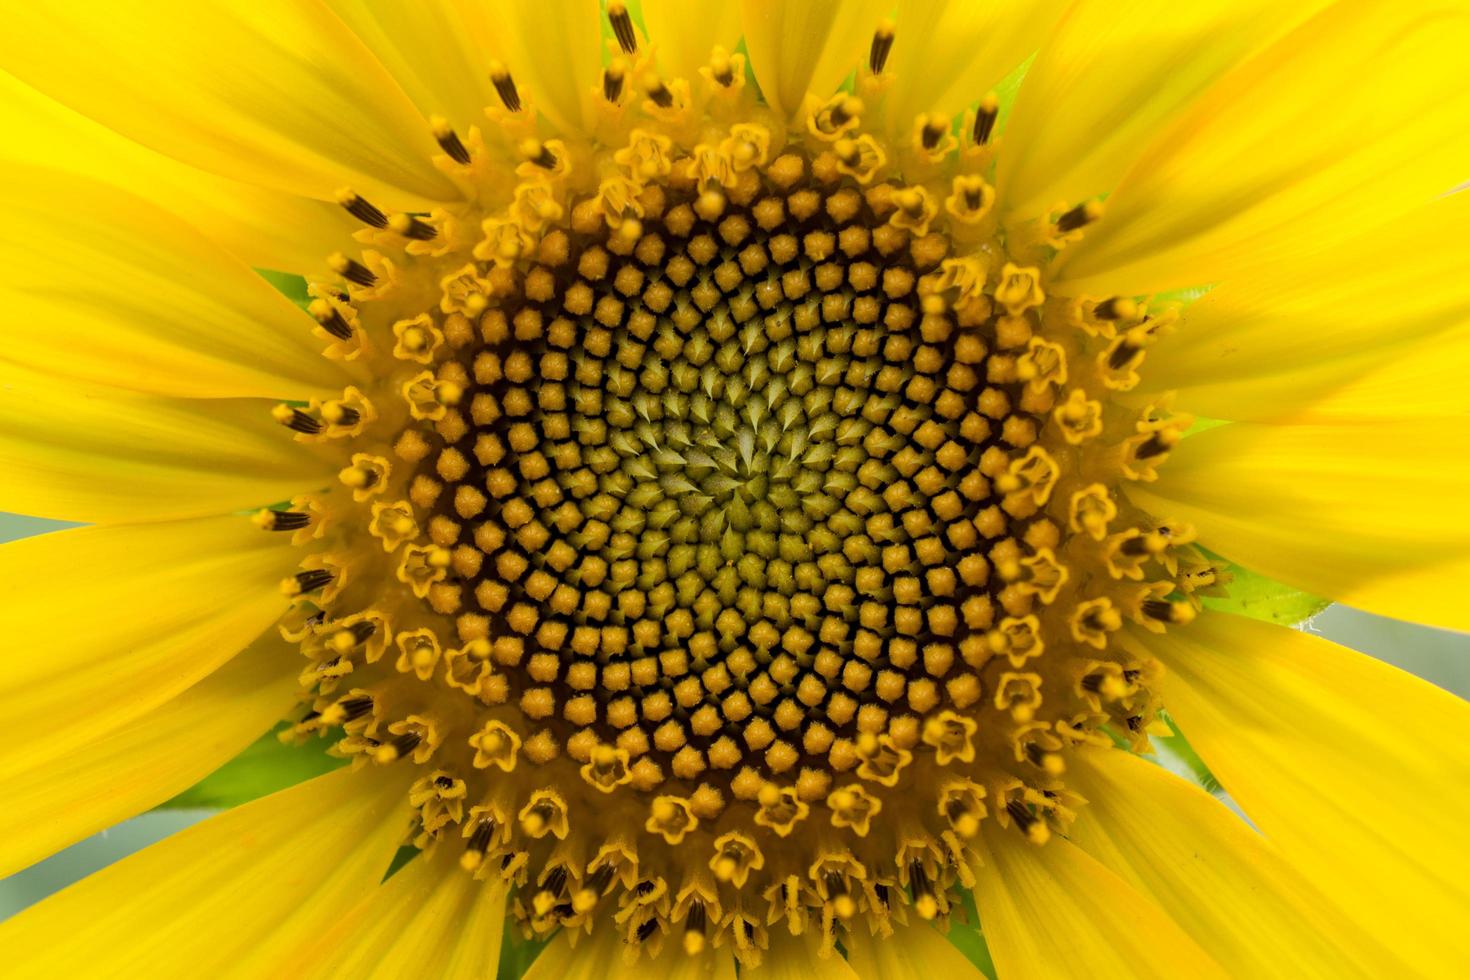 primo piano del girasole. i fiori di girasole sono disposti in una spirale naturale avente una sequenza di fibonacci. foto